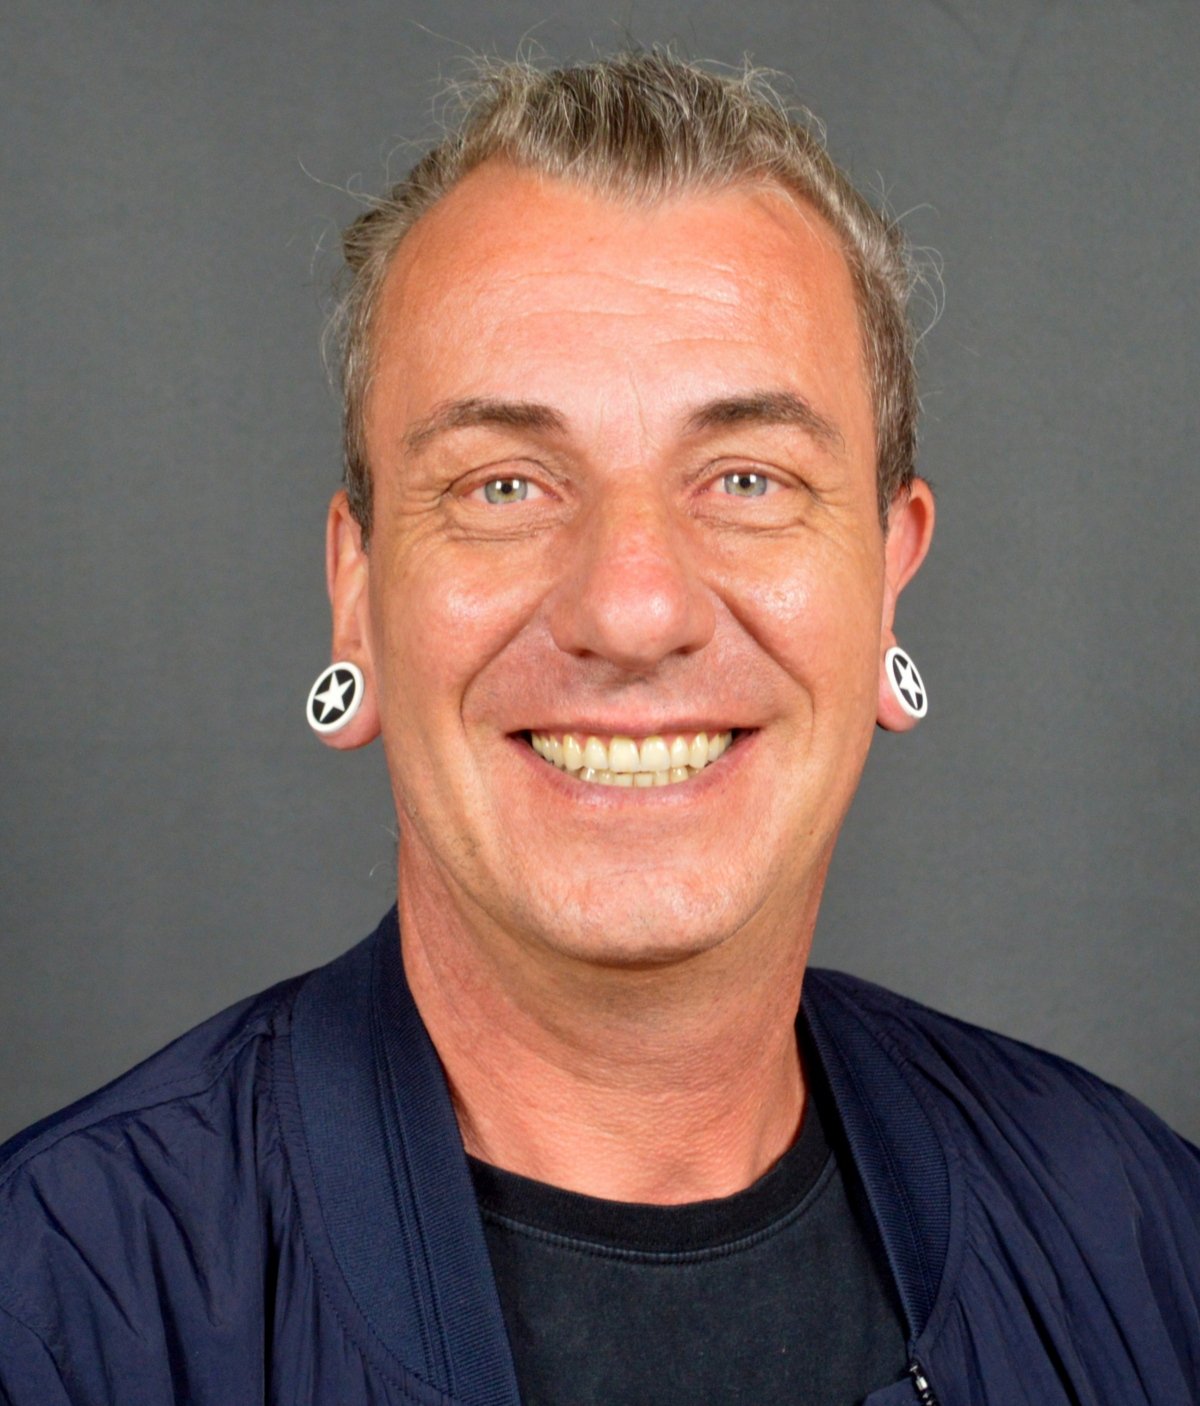 Marc Chmielewski